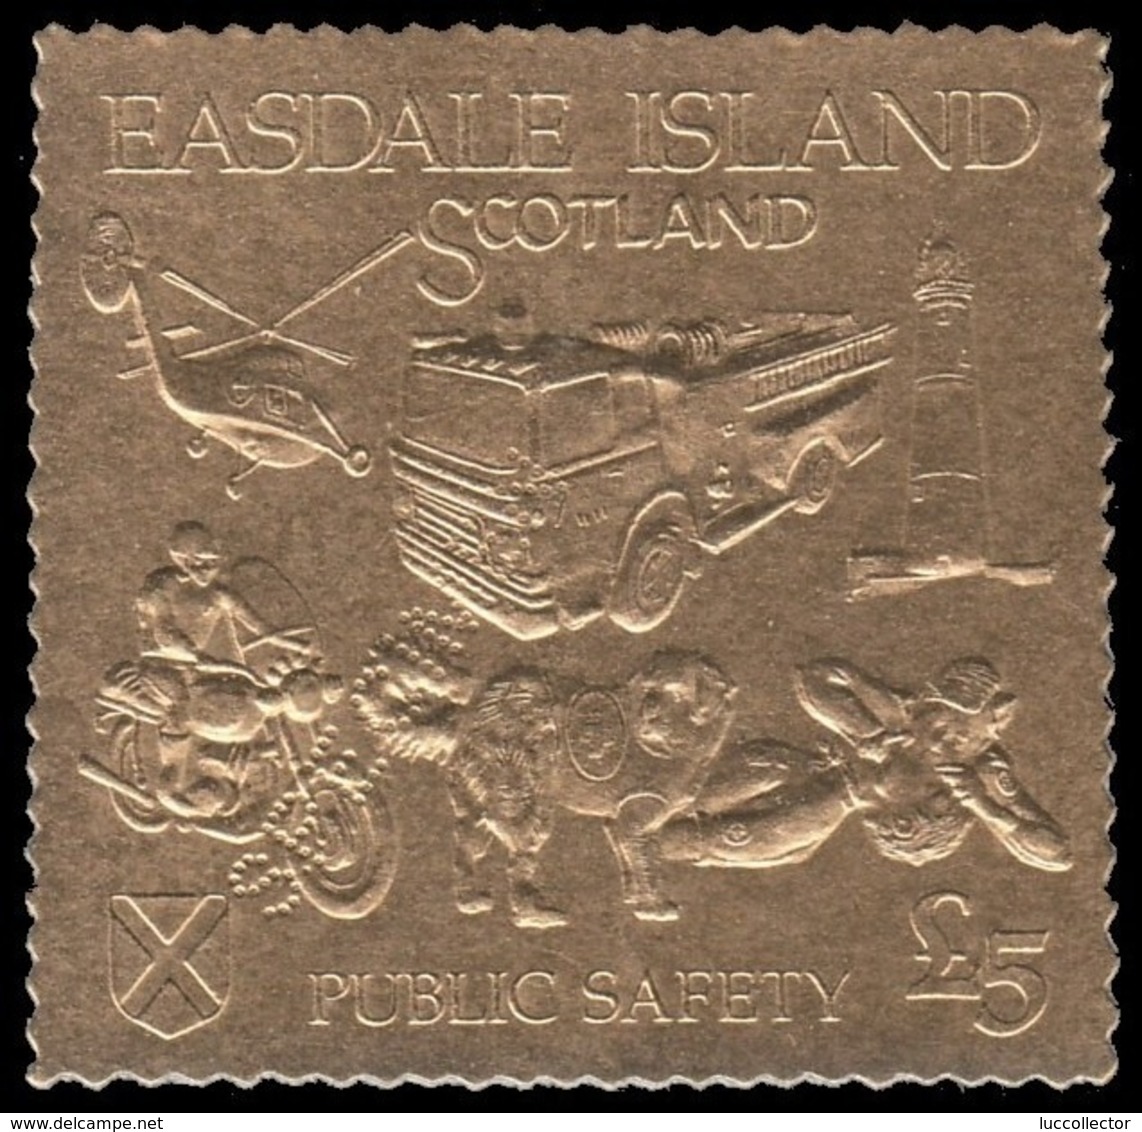 Easdale Island 1991 SPECIMEN  "fire, Firemen, Feuerwehr" - Firemen